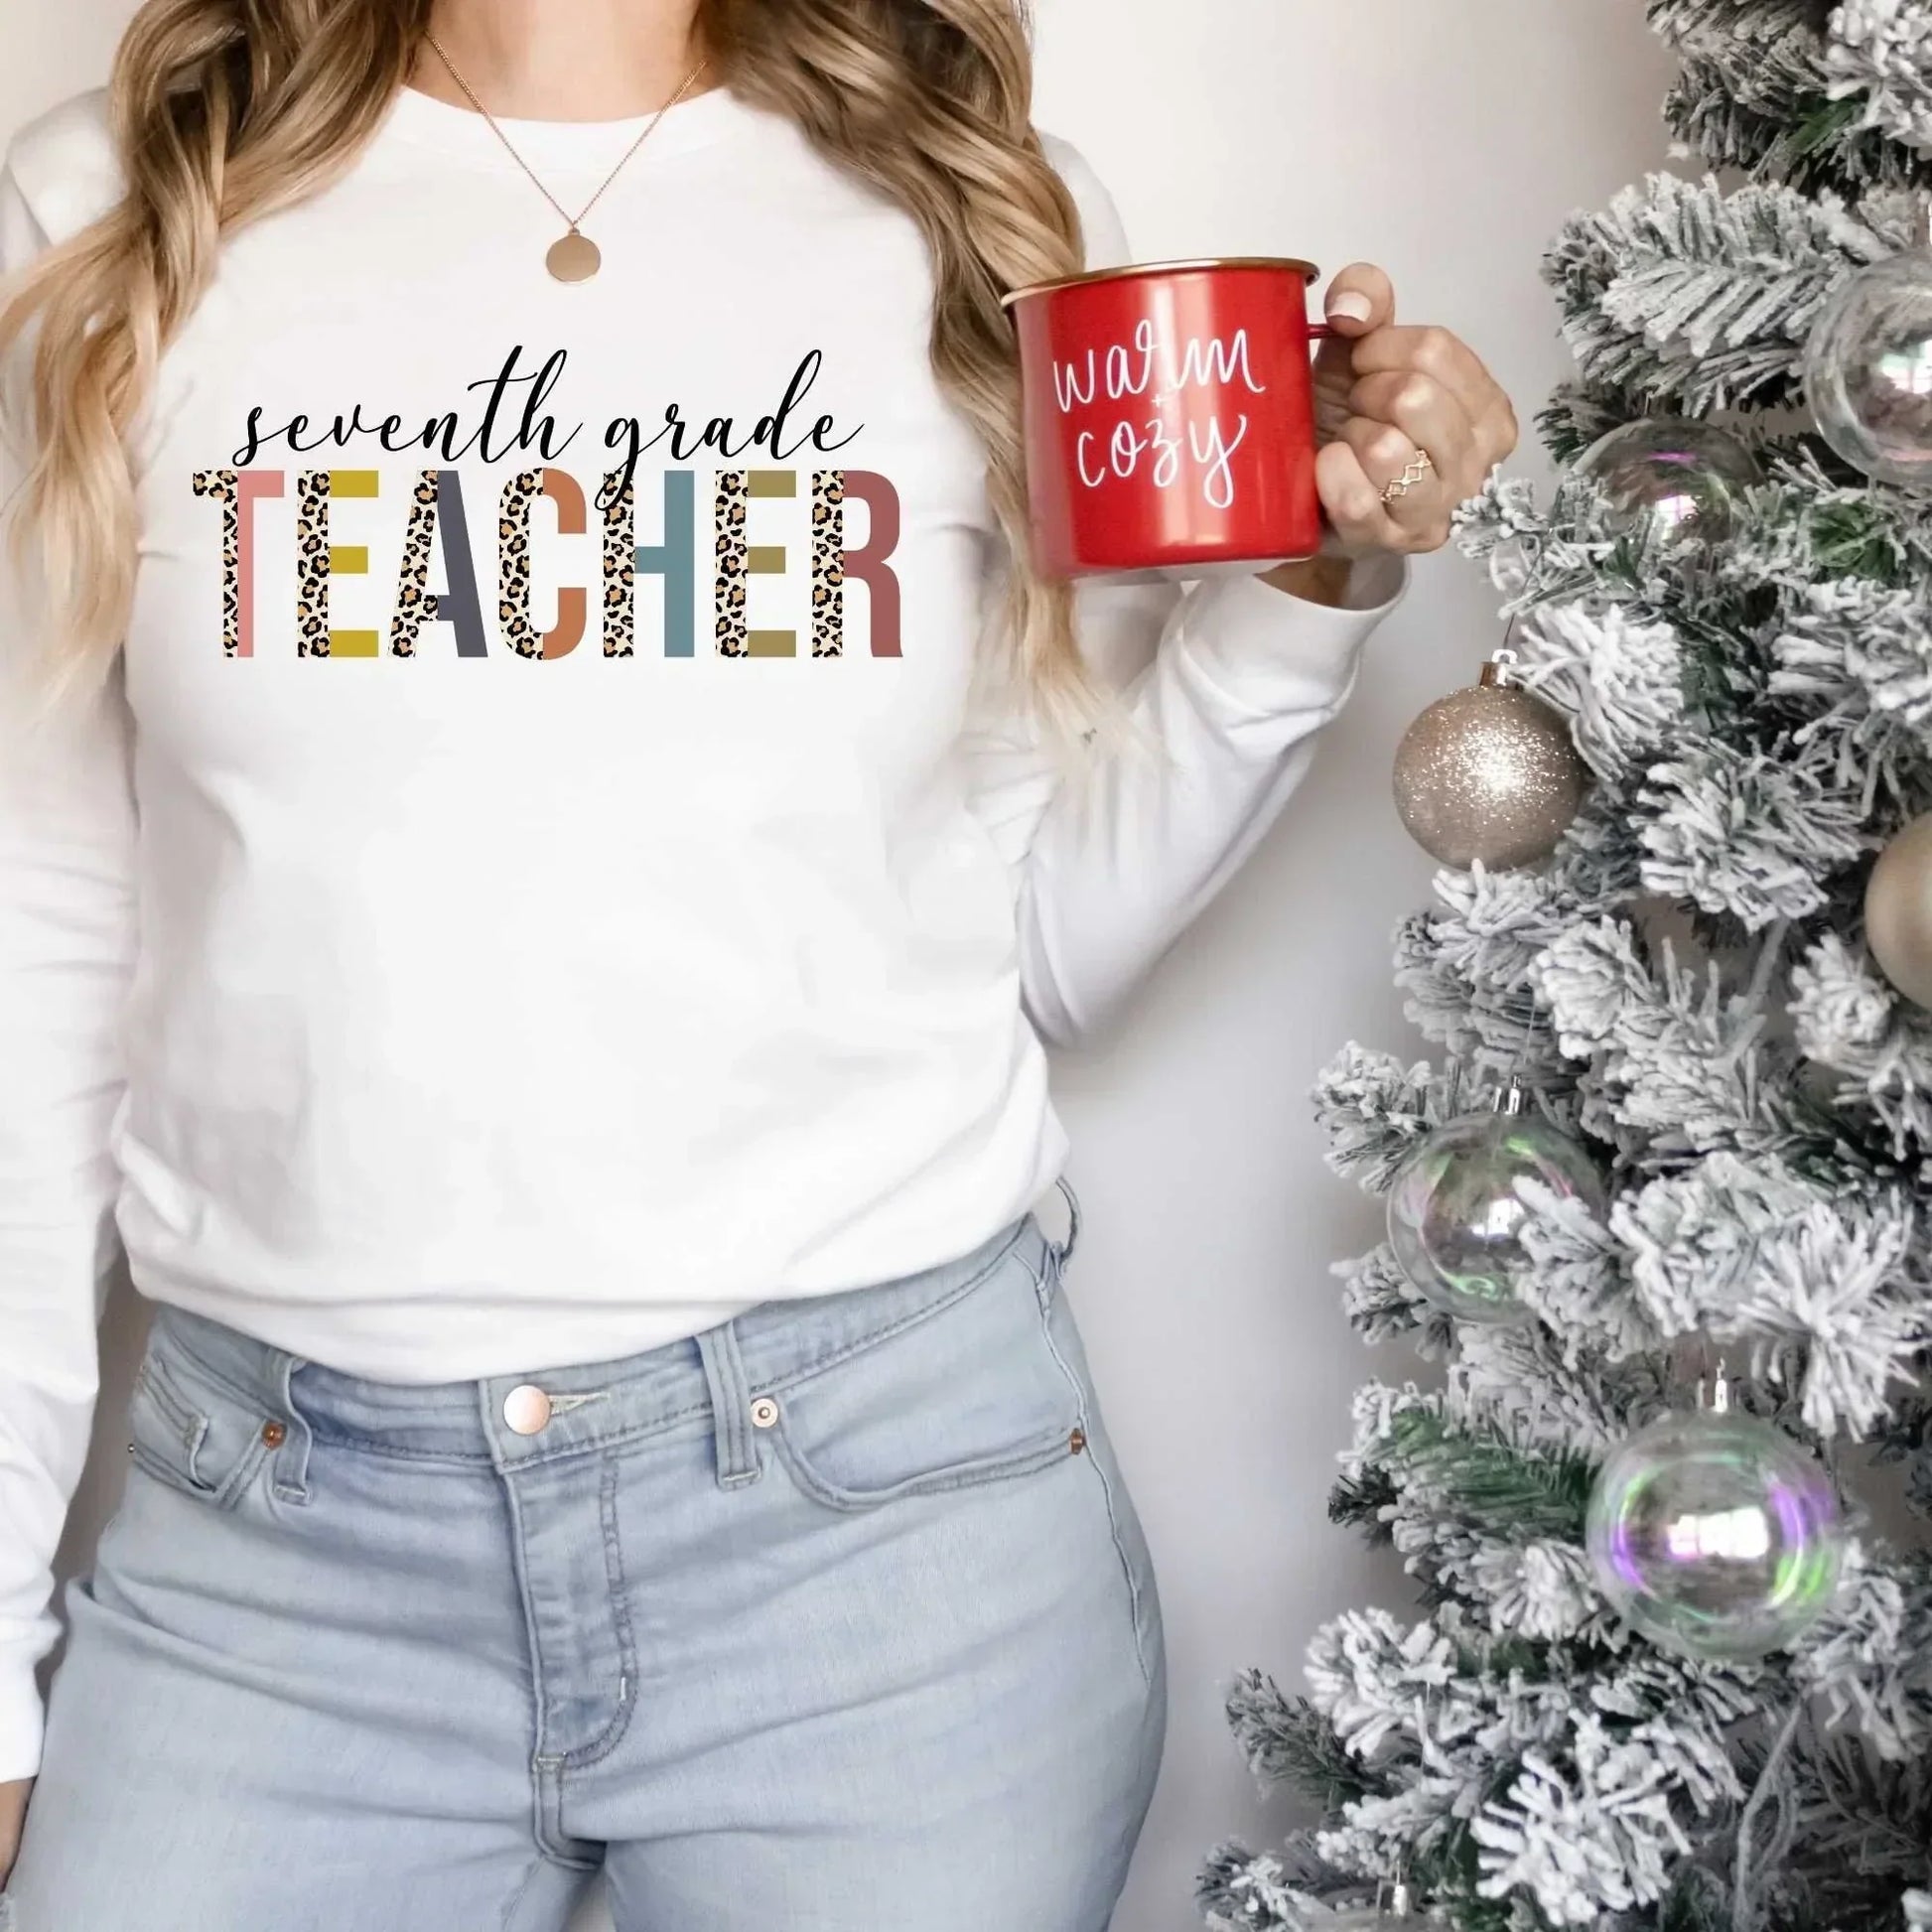 7th Grade Teacher Shirt, Great for New Teacher, Teacher Teams & Appreciation Gifts